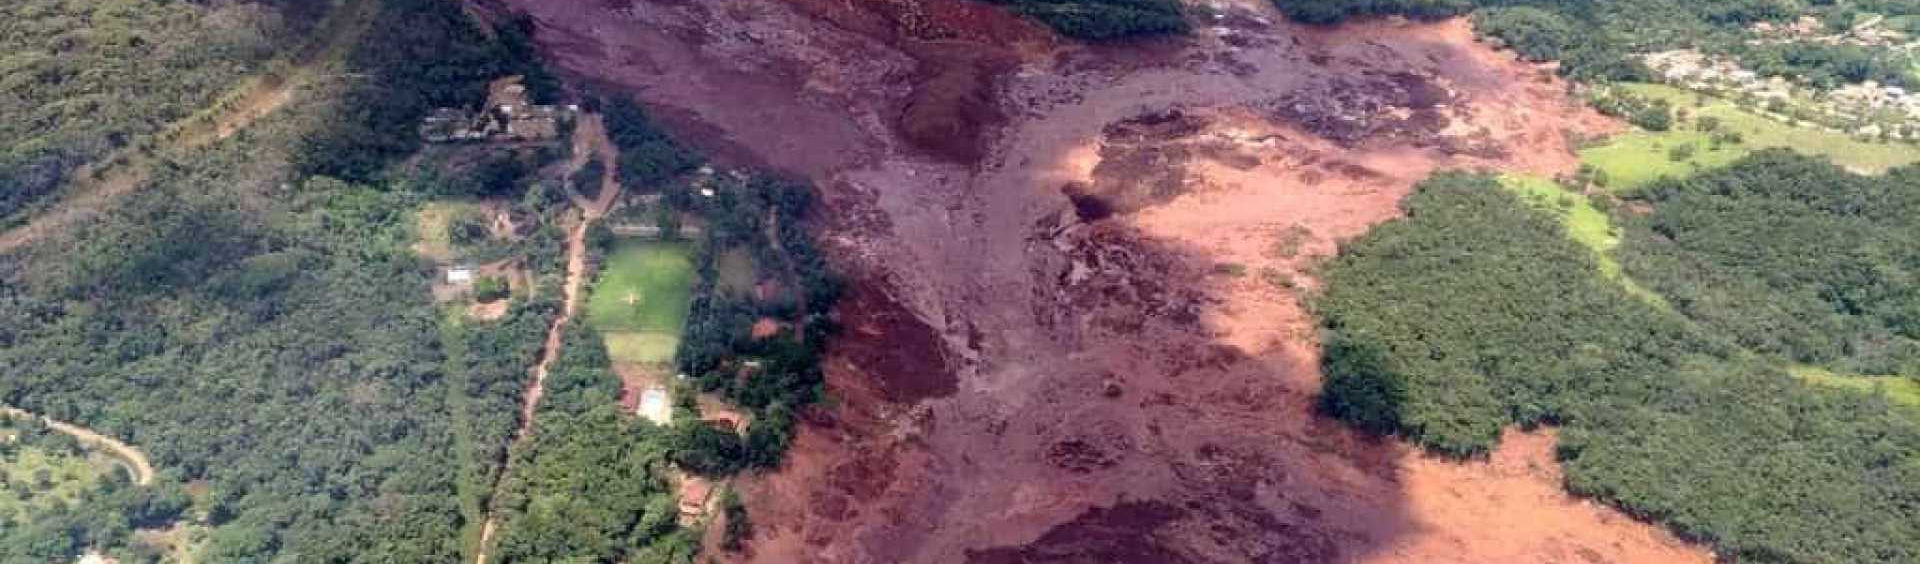 Balanço crítico: Um mês do crime ambiental da vale em Brumadinho, Minas Gerais